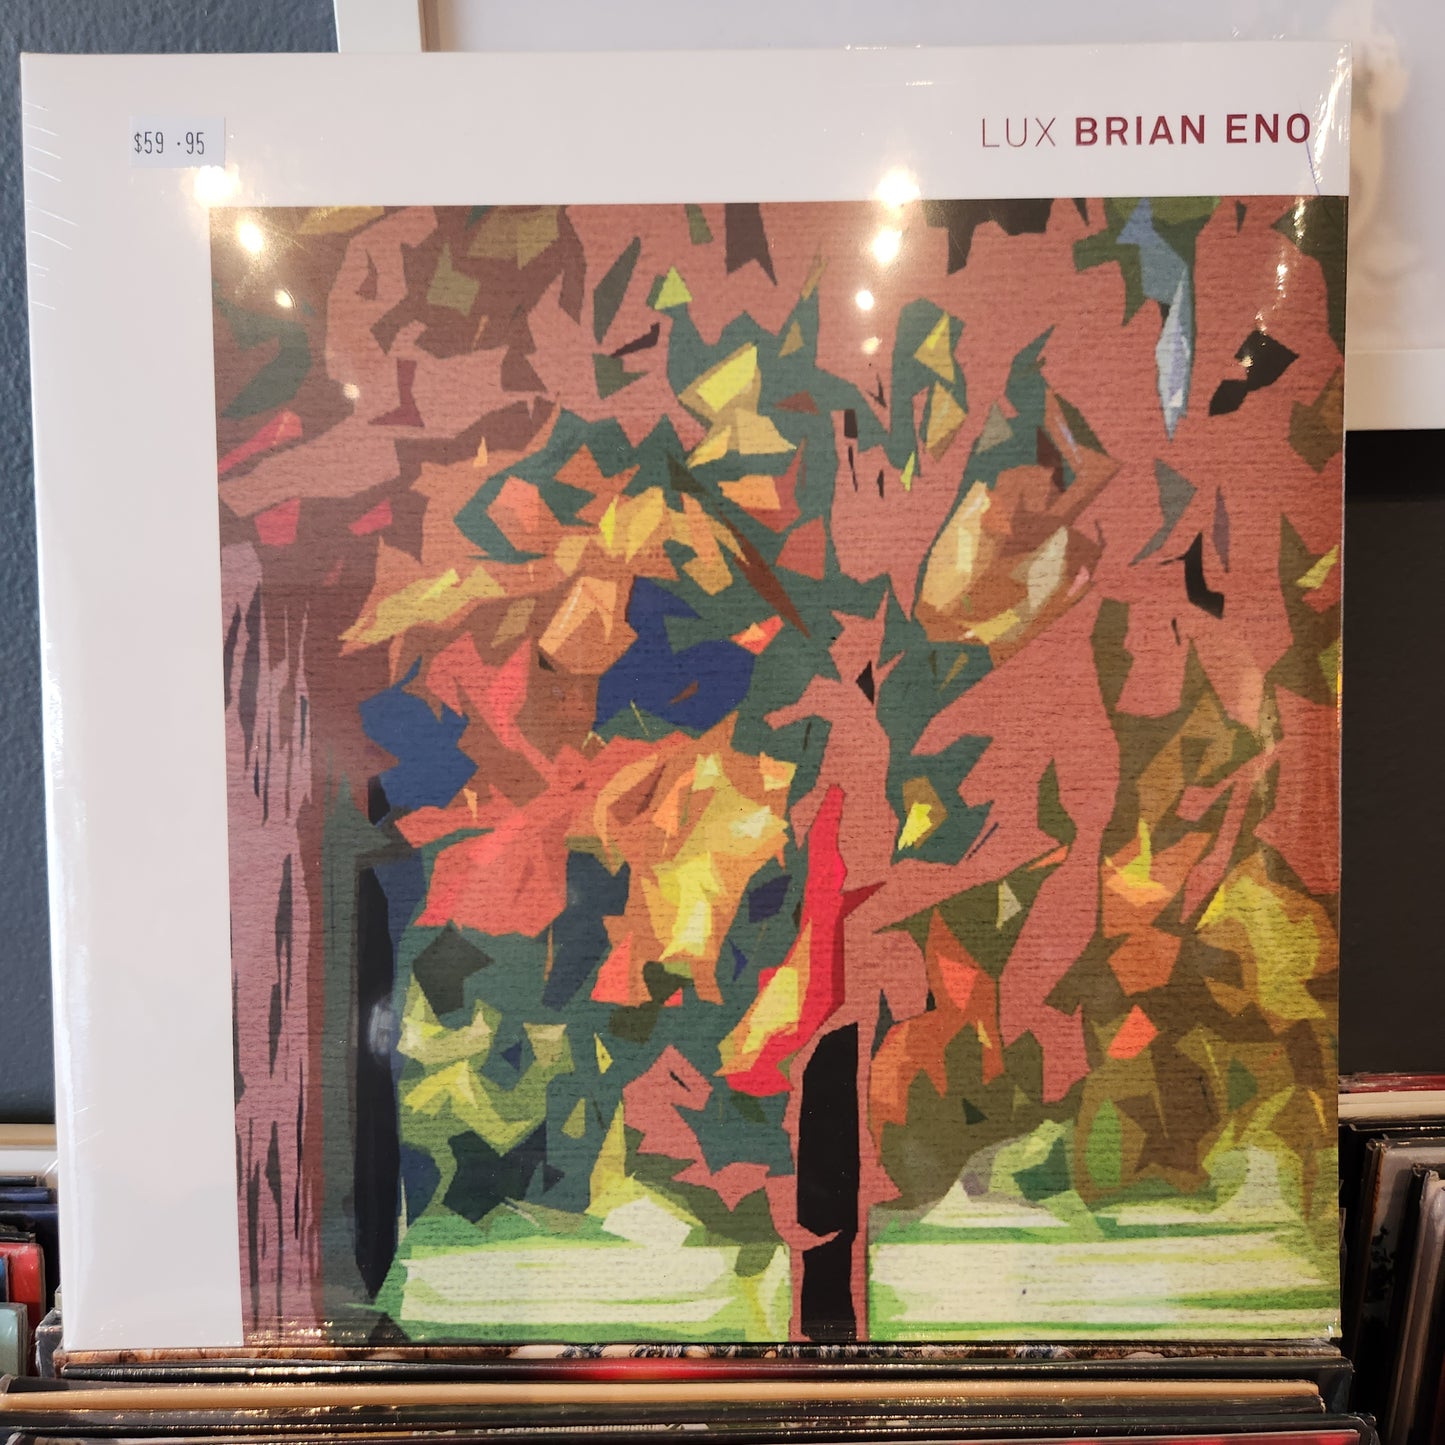 Brian Eno - Lux - Vinyl LP